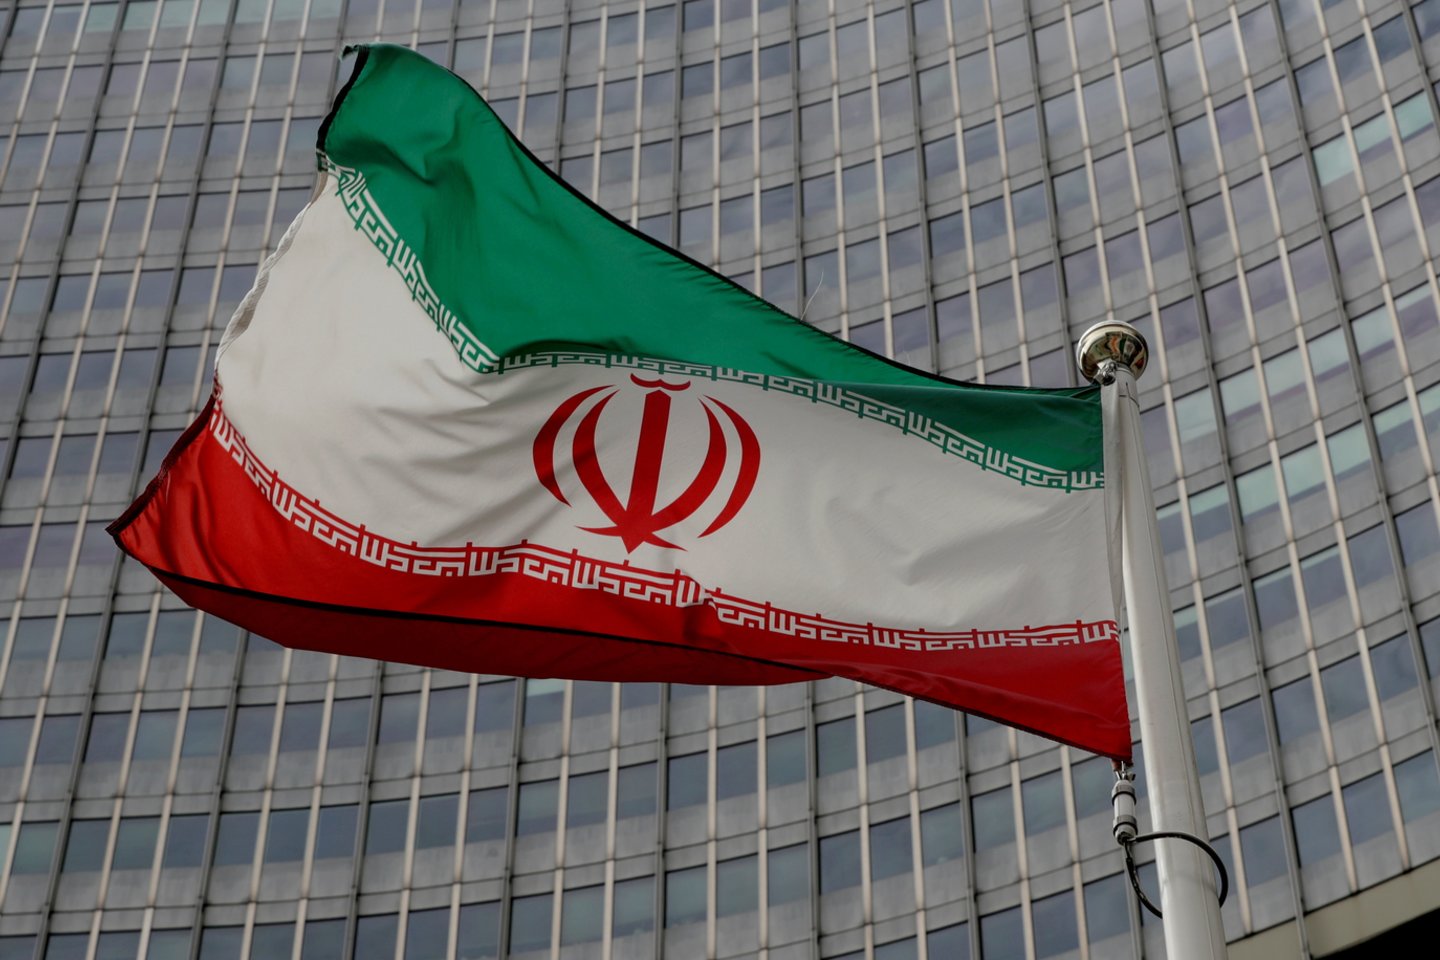 Vienoje sekmadienį užsibaigęs šeštasis derybų dėl branduolinio susitarimo su Teheranu ratas.<br>REUTERS/Scanpix nuotr.